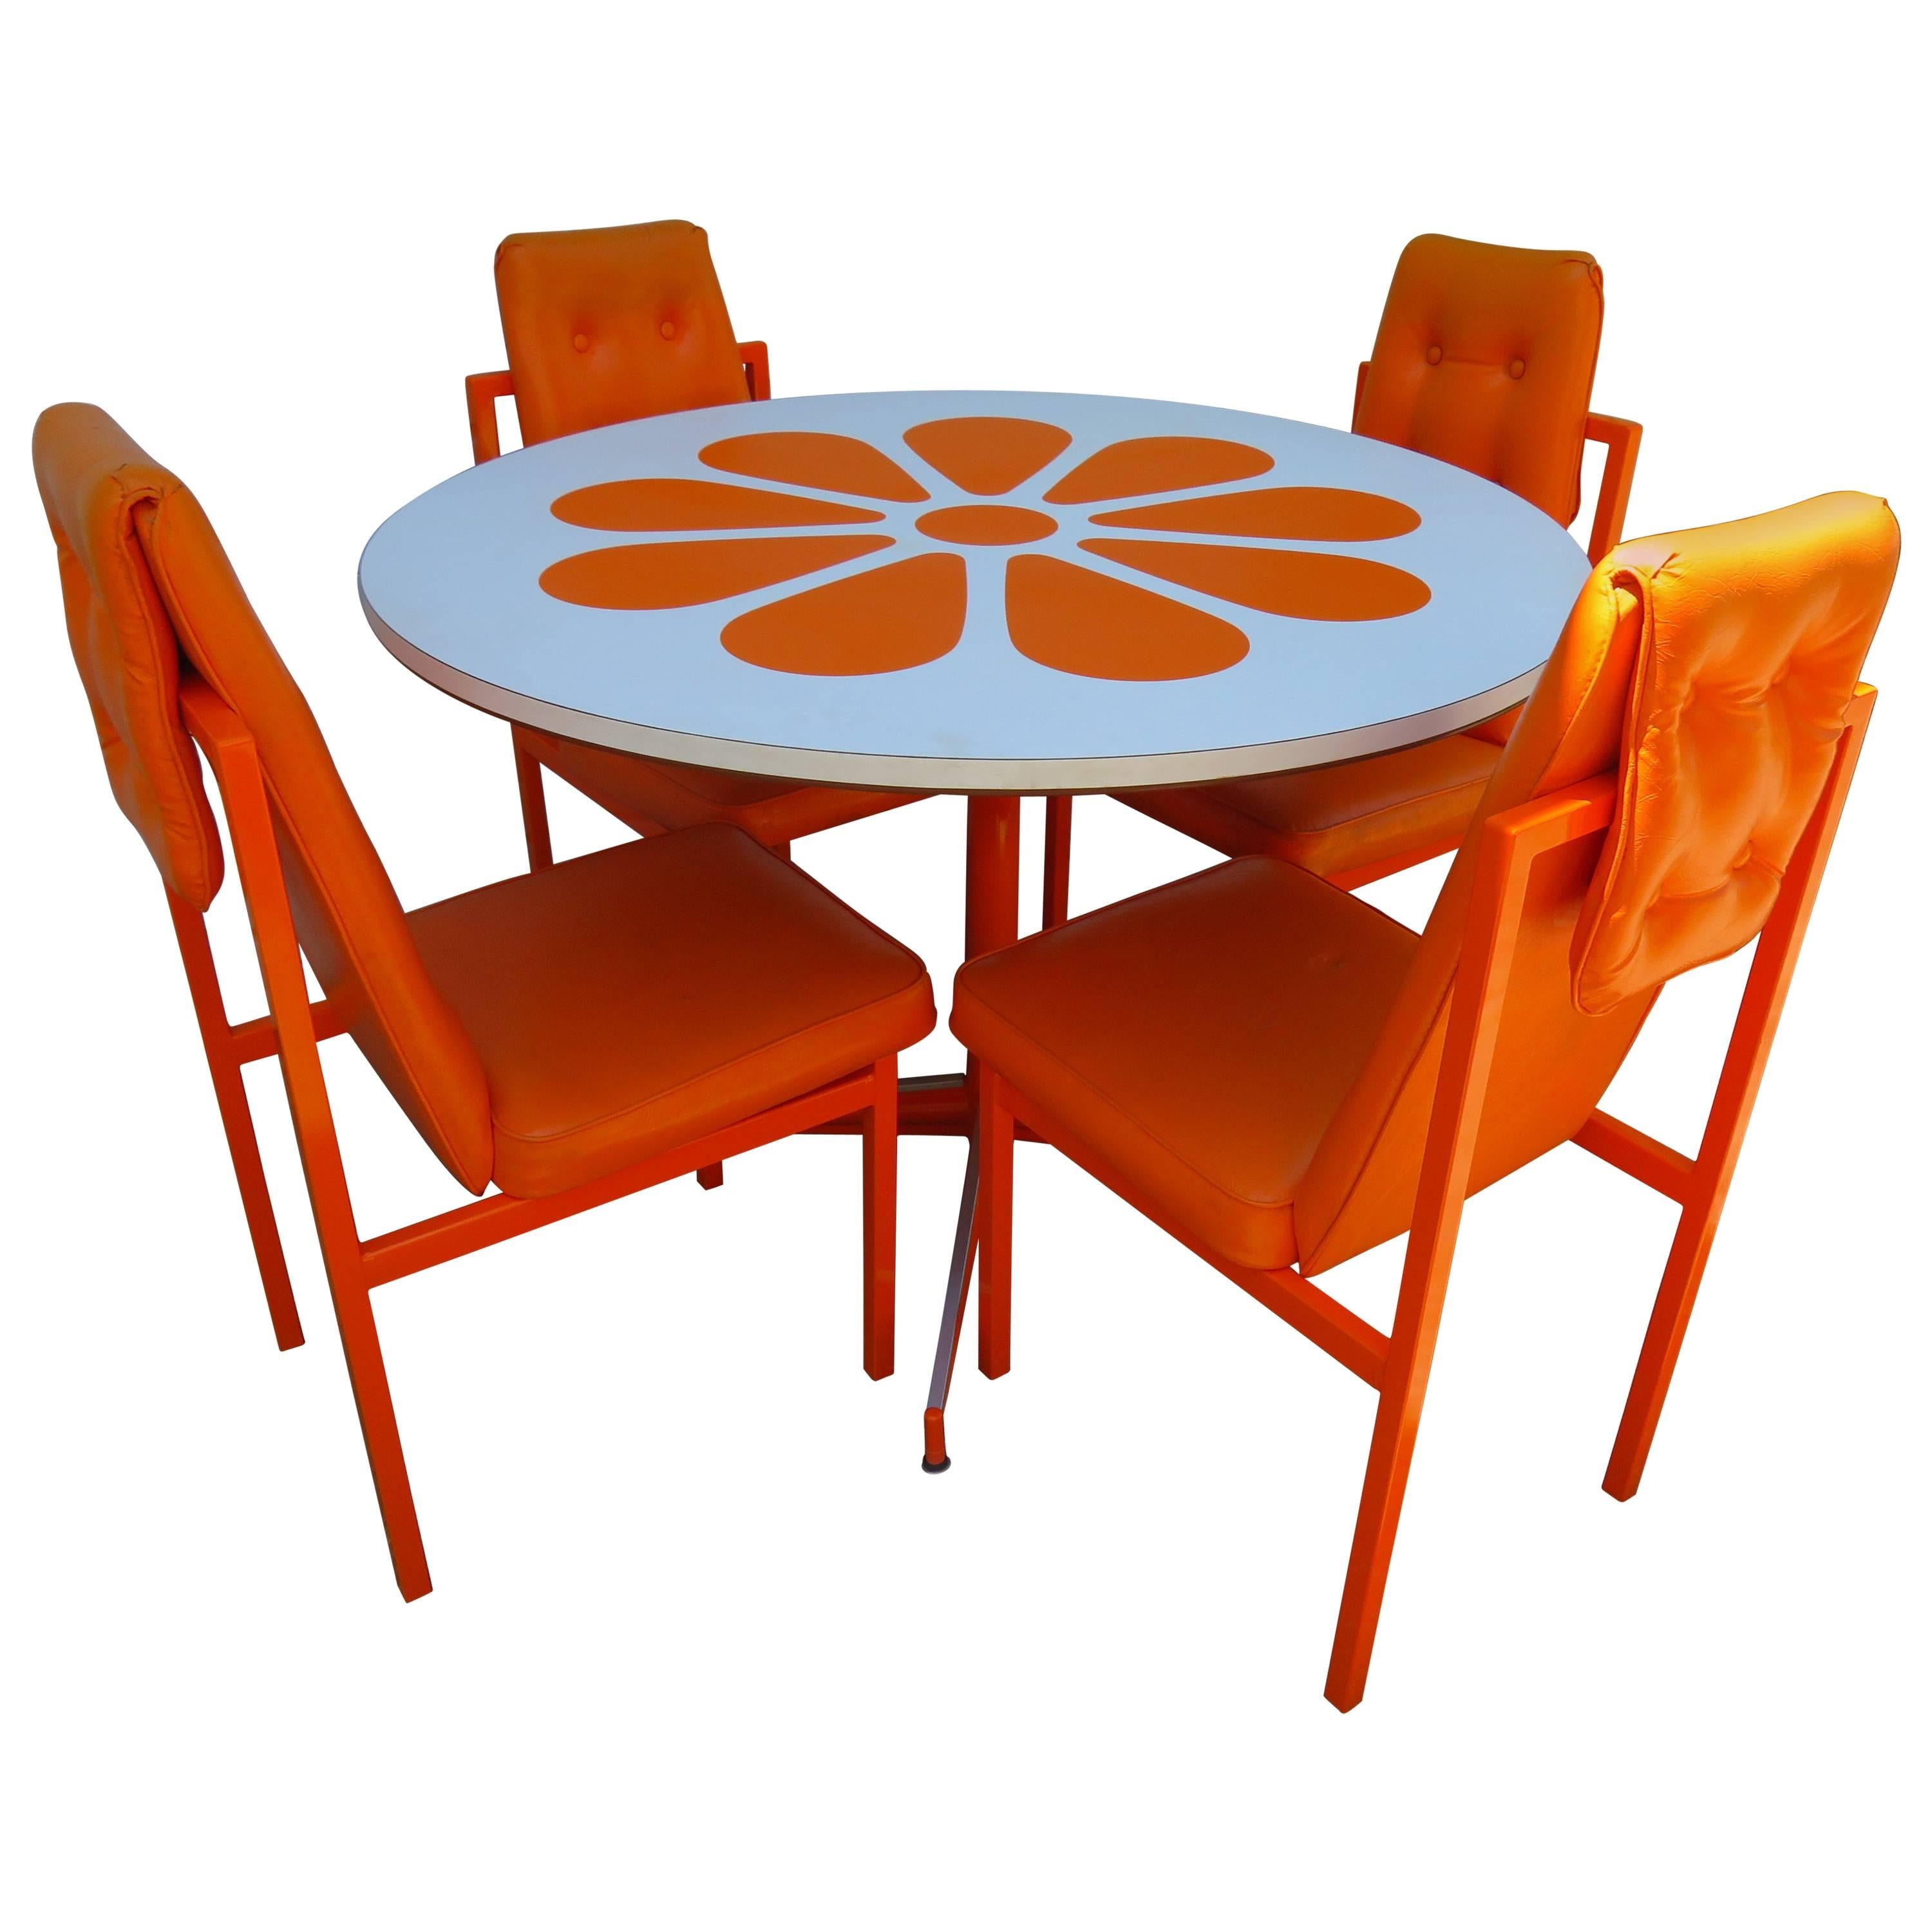 Оранжевый столик. Оранжевый стол. Пластмассовые столы и стулья. Стол с оранжевыми стульями. Стол оранжевый круглый.